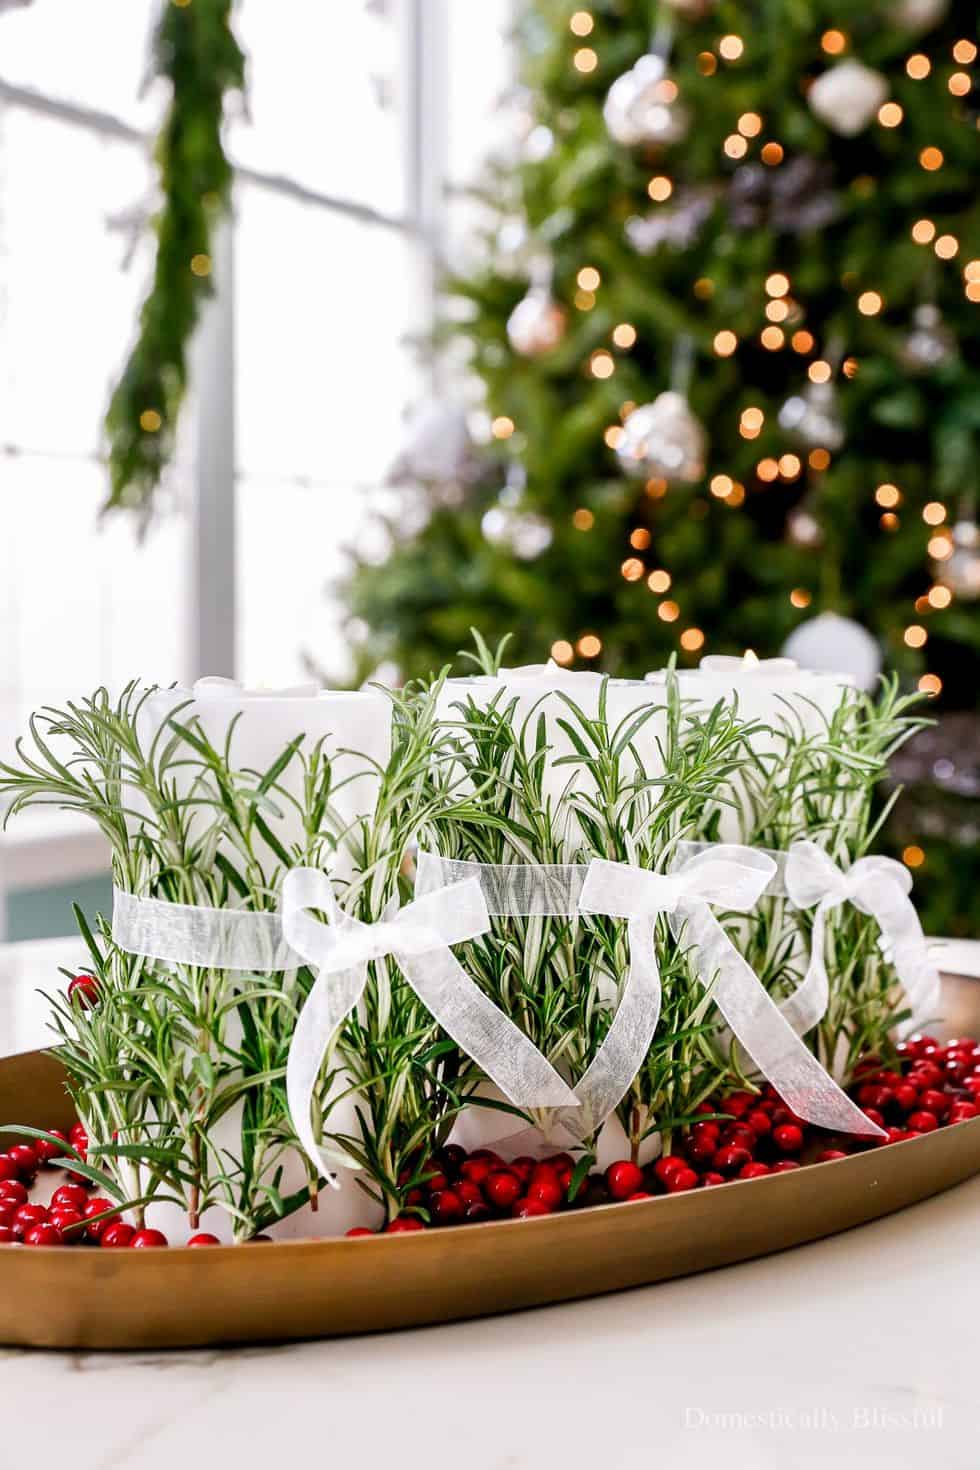 Decoración de mesas navideñas concon centro de mesa con velas de romero